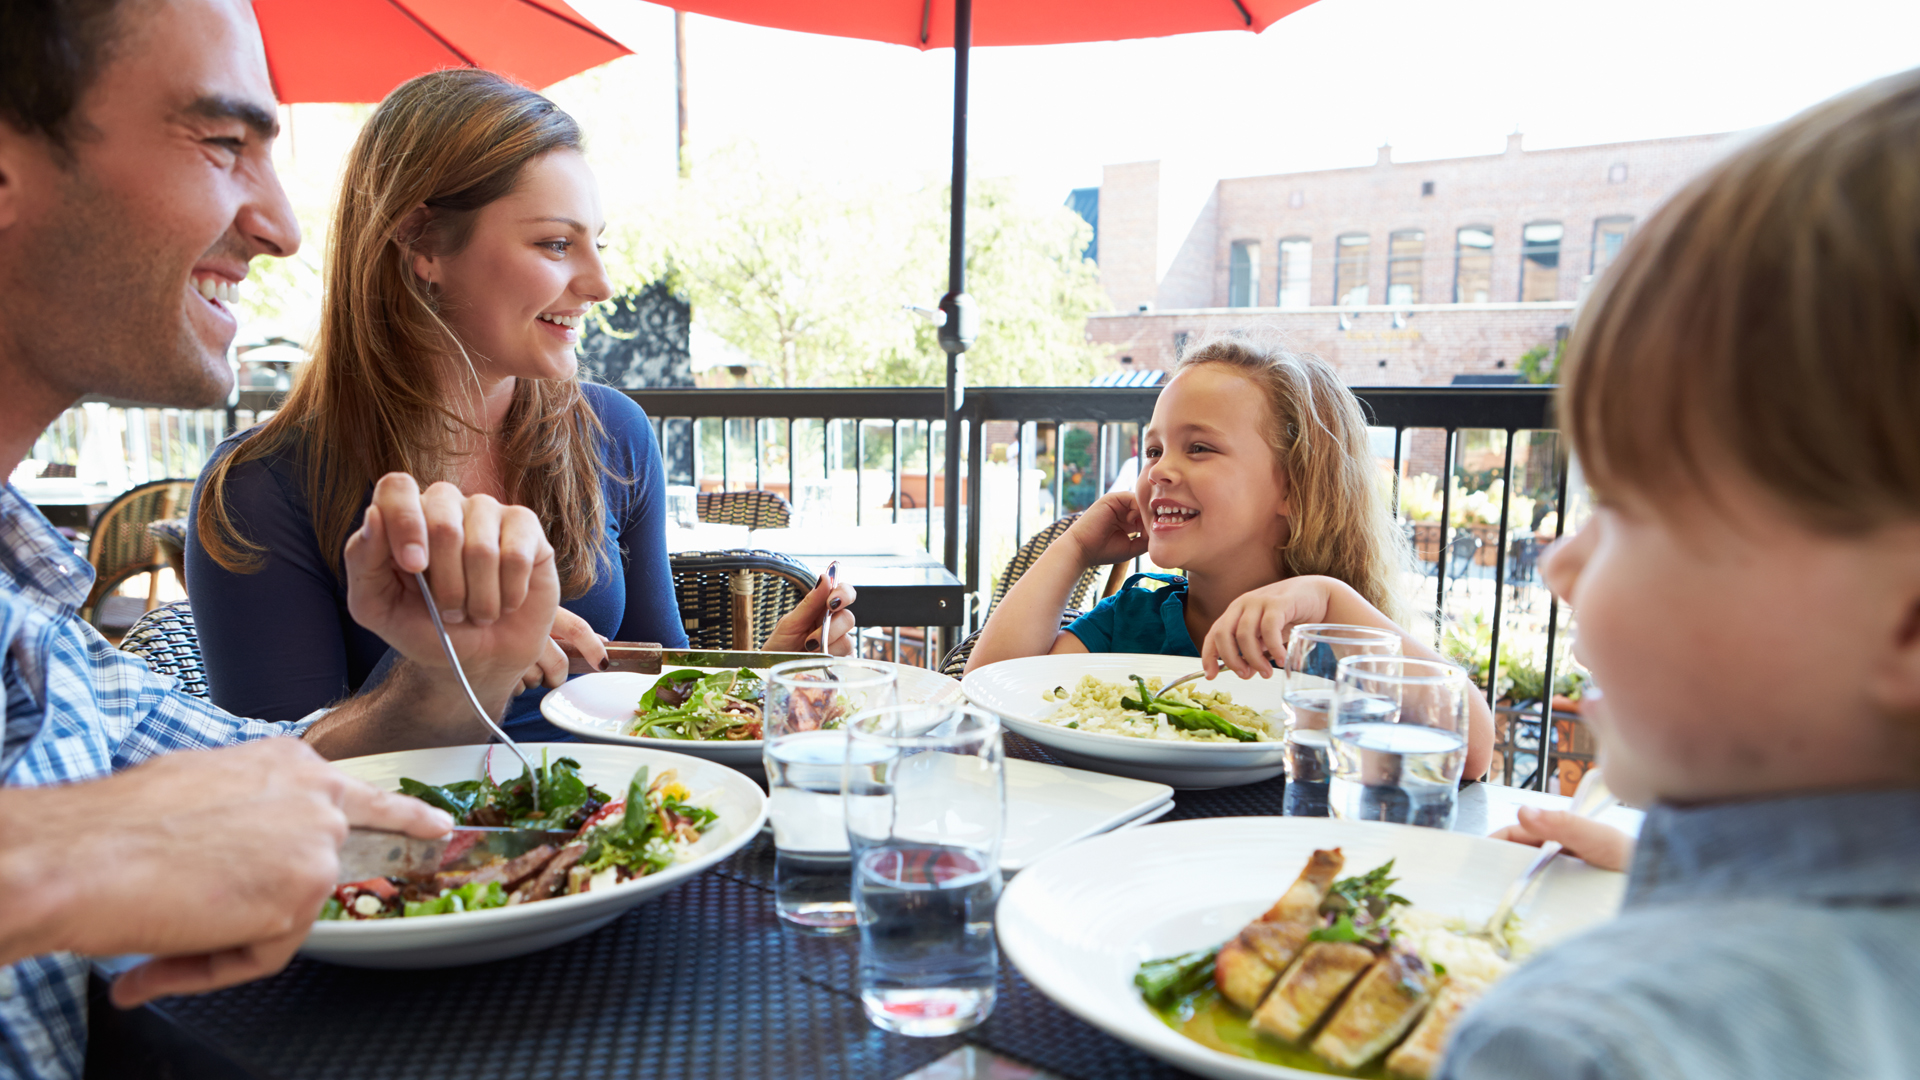 Estar compartiendo una comida en un restaurante es uno de los espacios que causan alegría en las personas